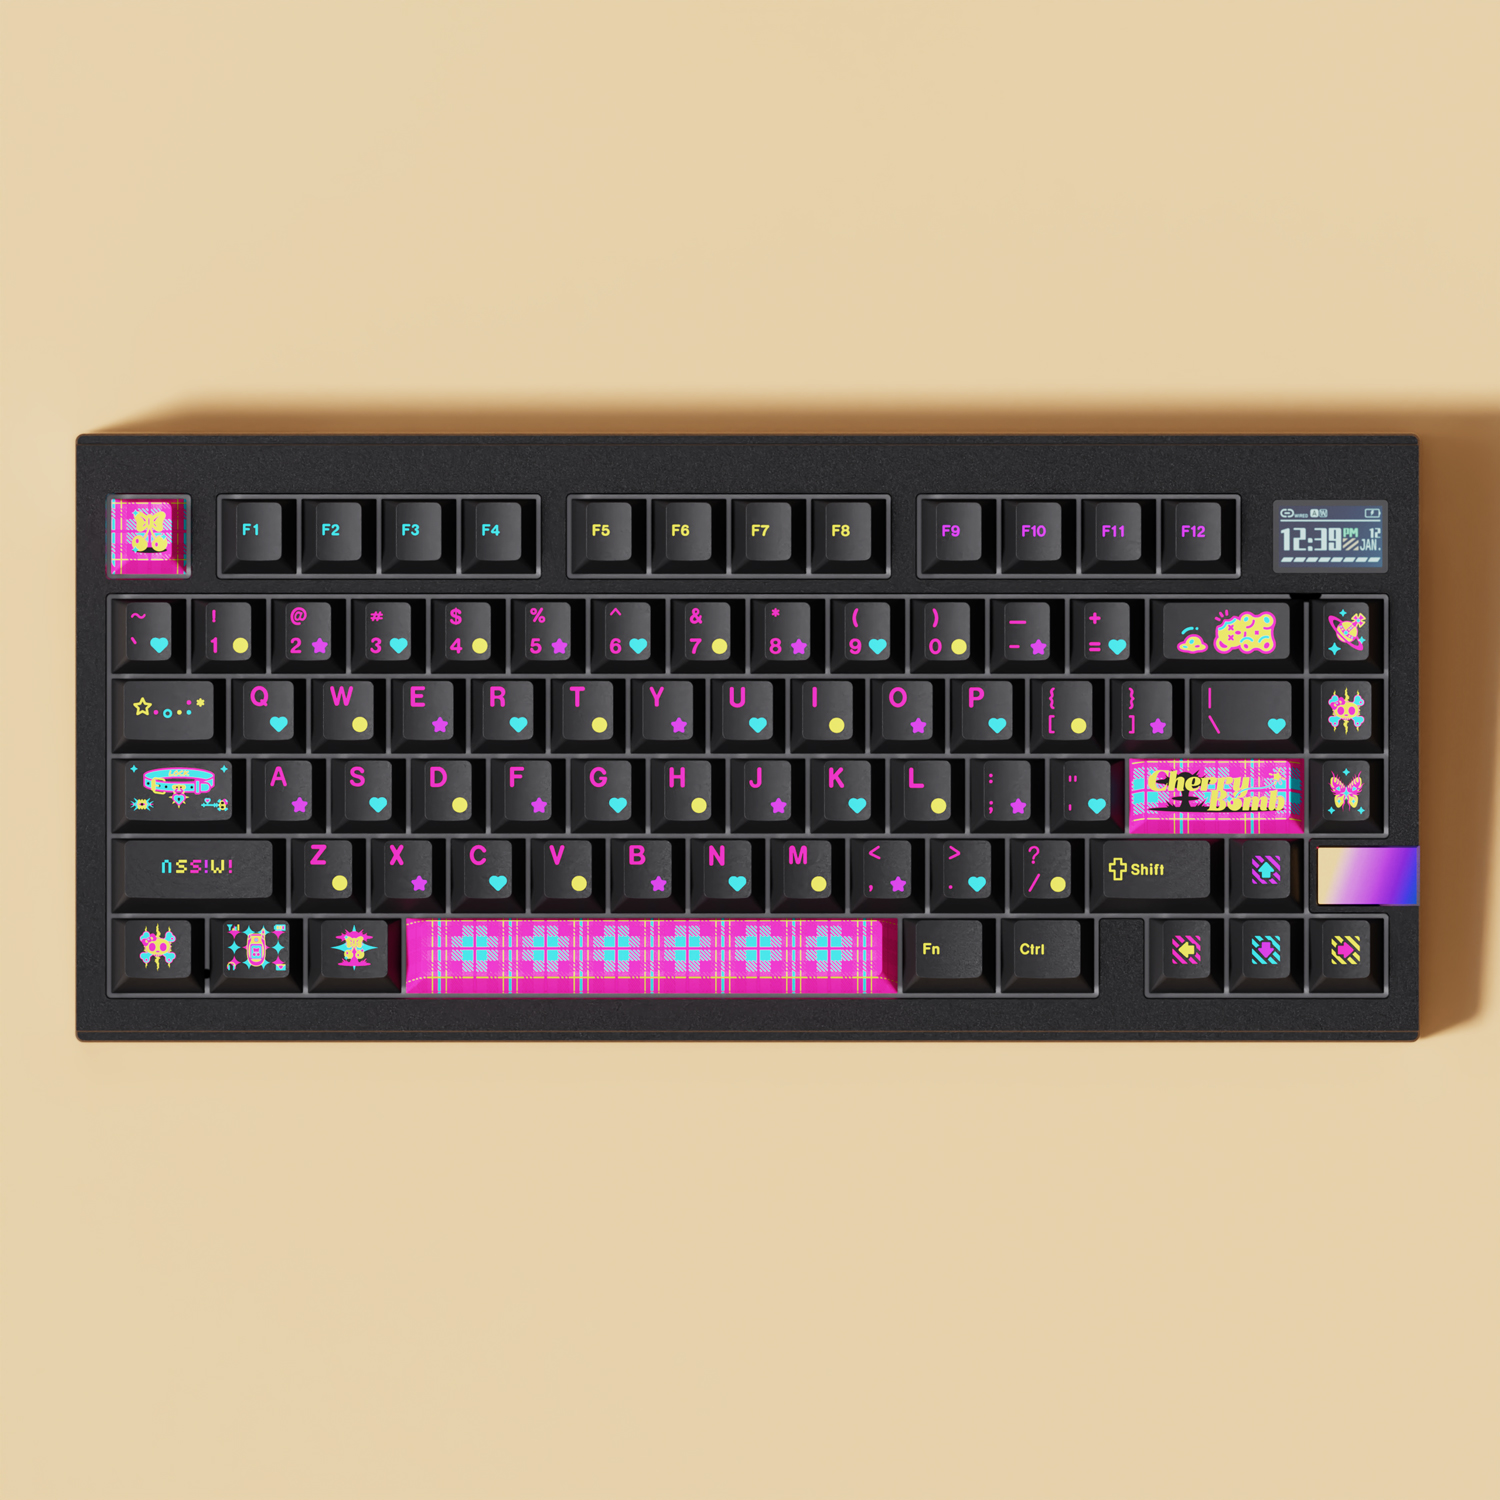 FINALKEY V81 PLUS Keyboard (KIT)